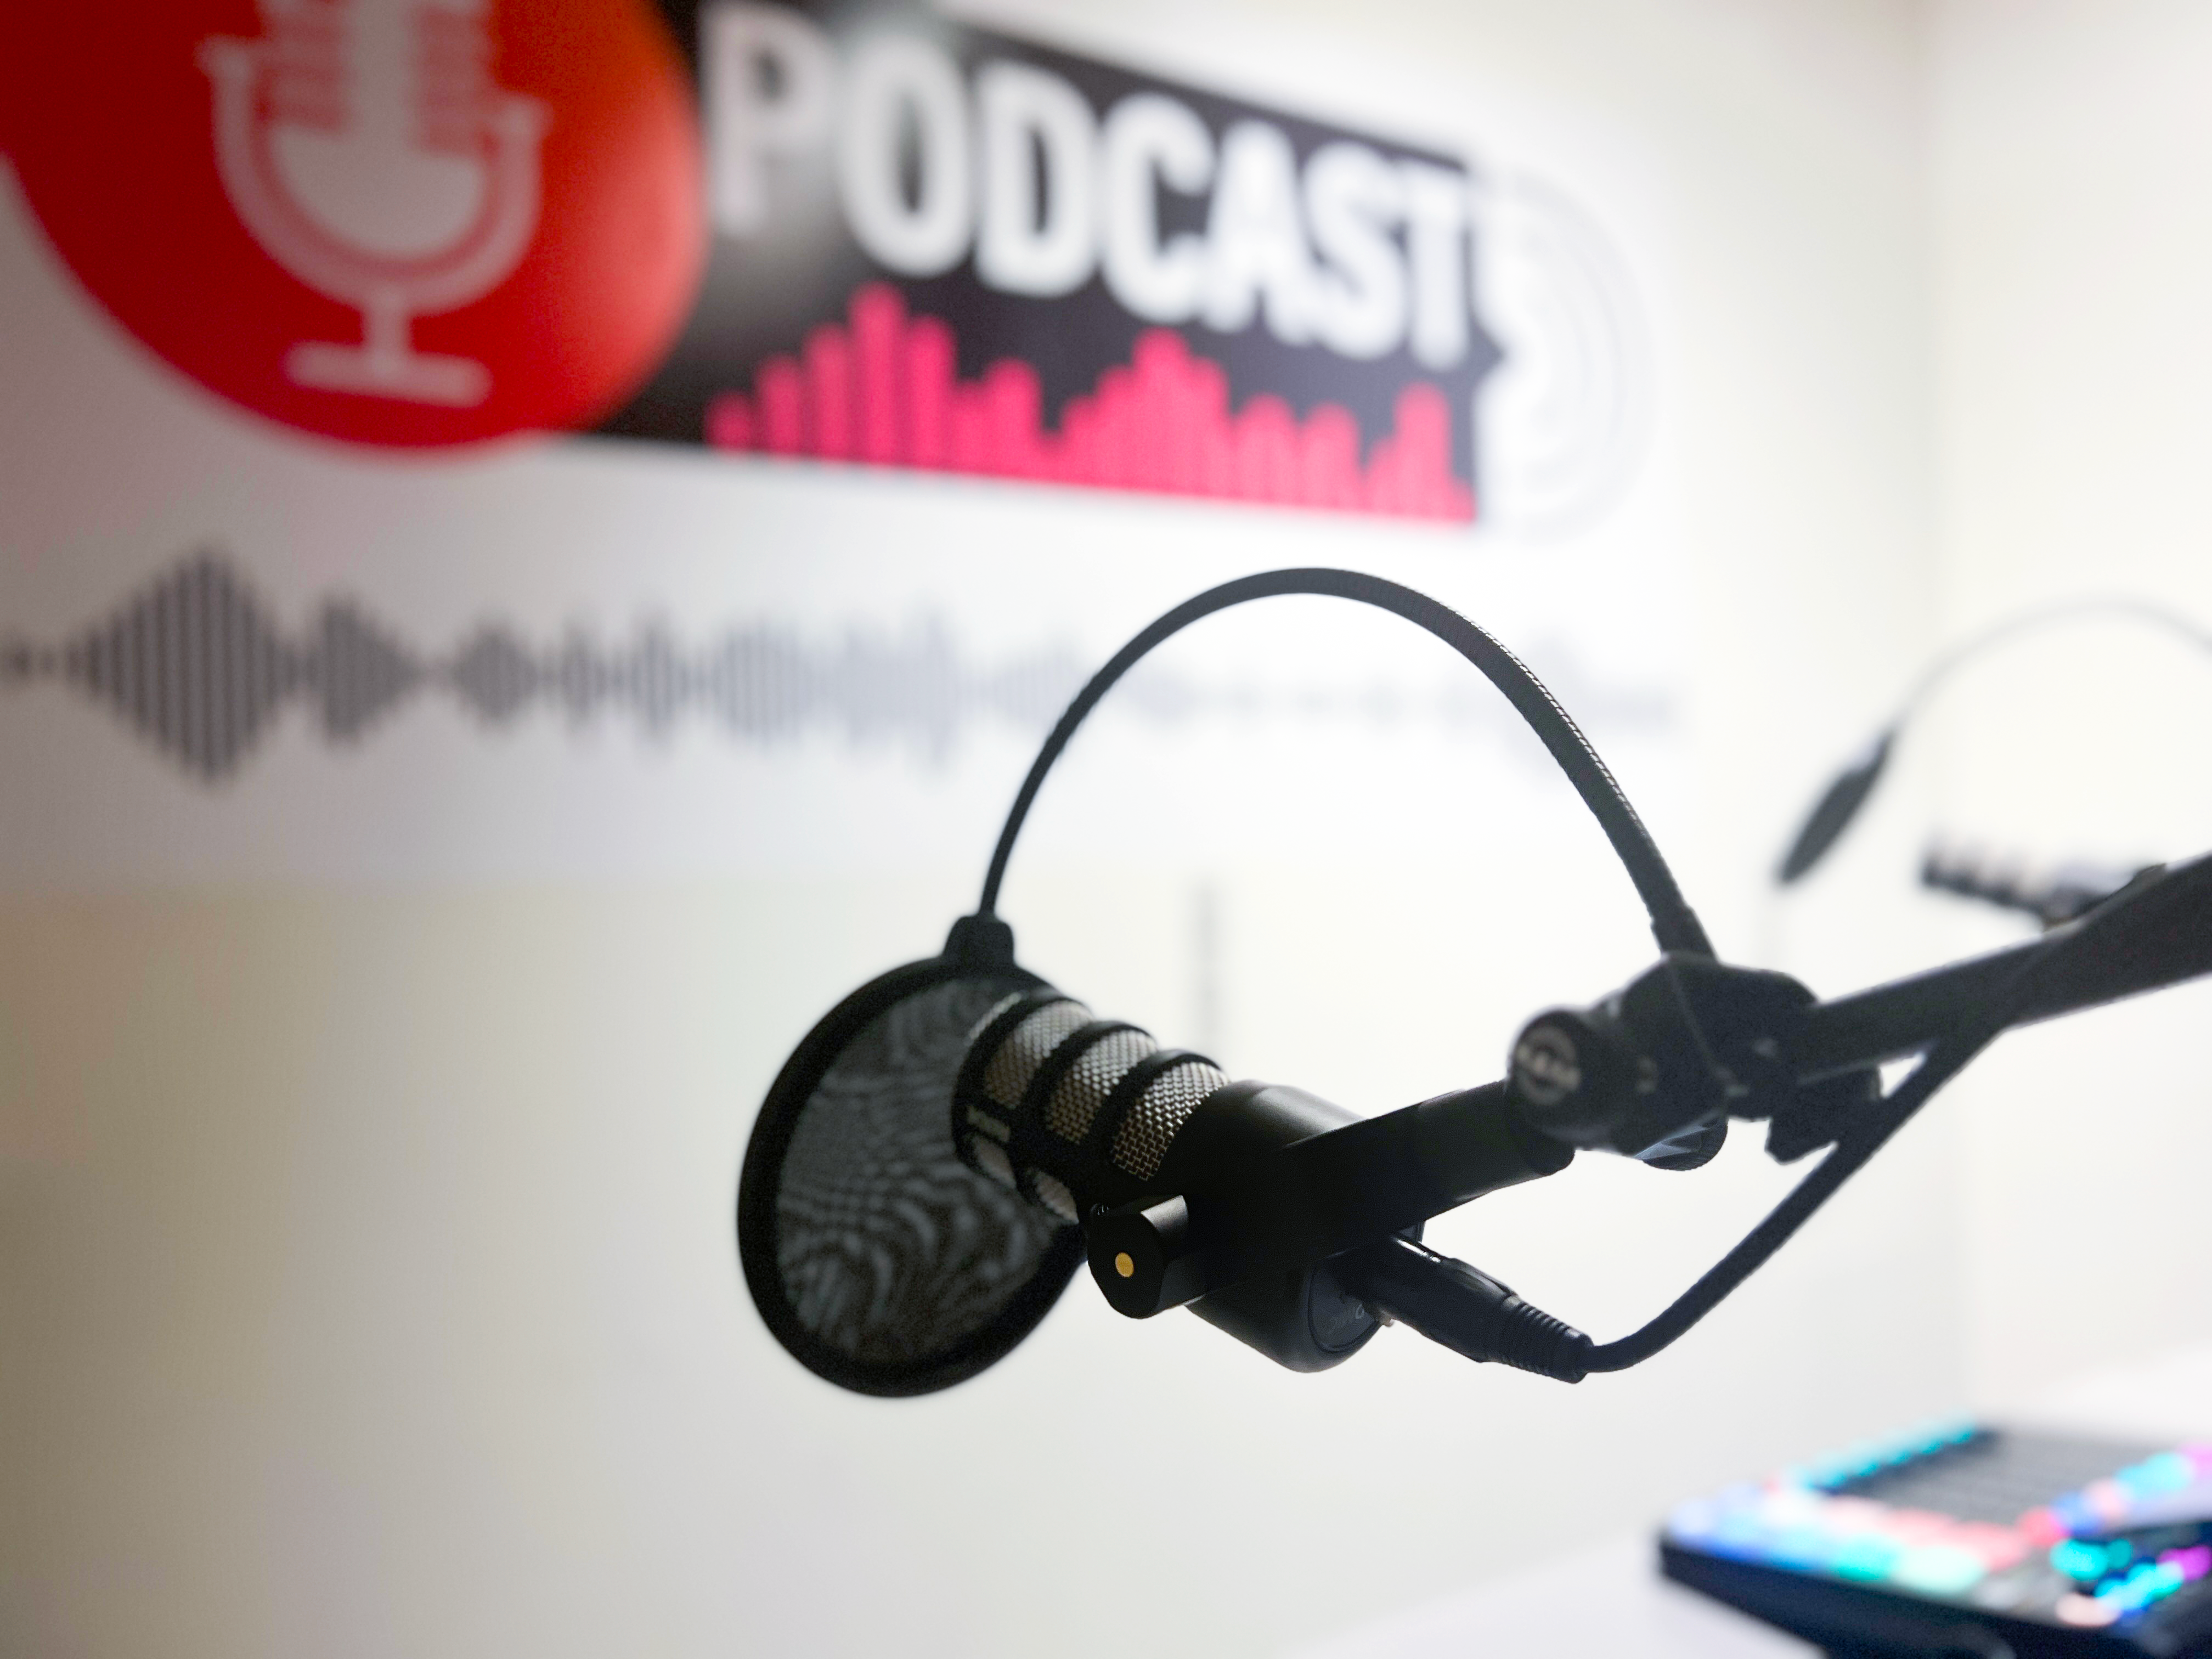 Et podcaststudie med mikrofon og en podcastmixer